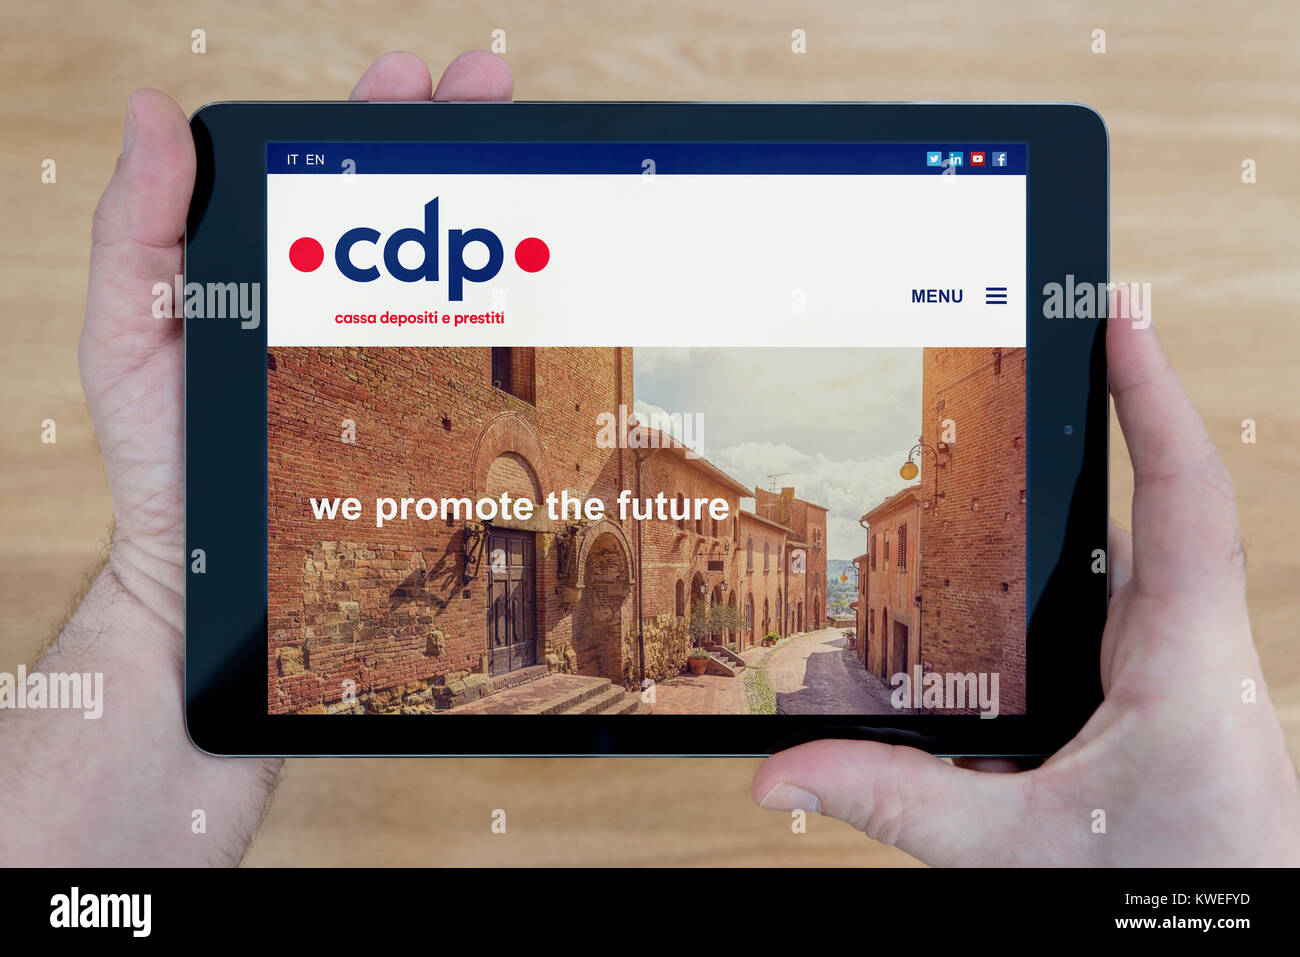 CDP Reti: Cassa Depositi e Prestiti Group